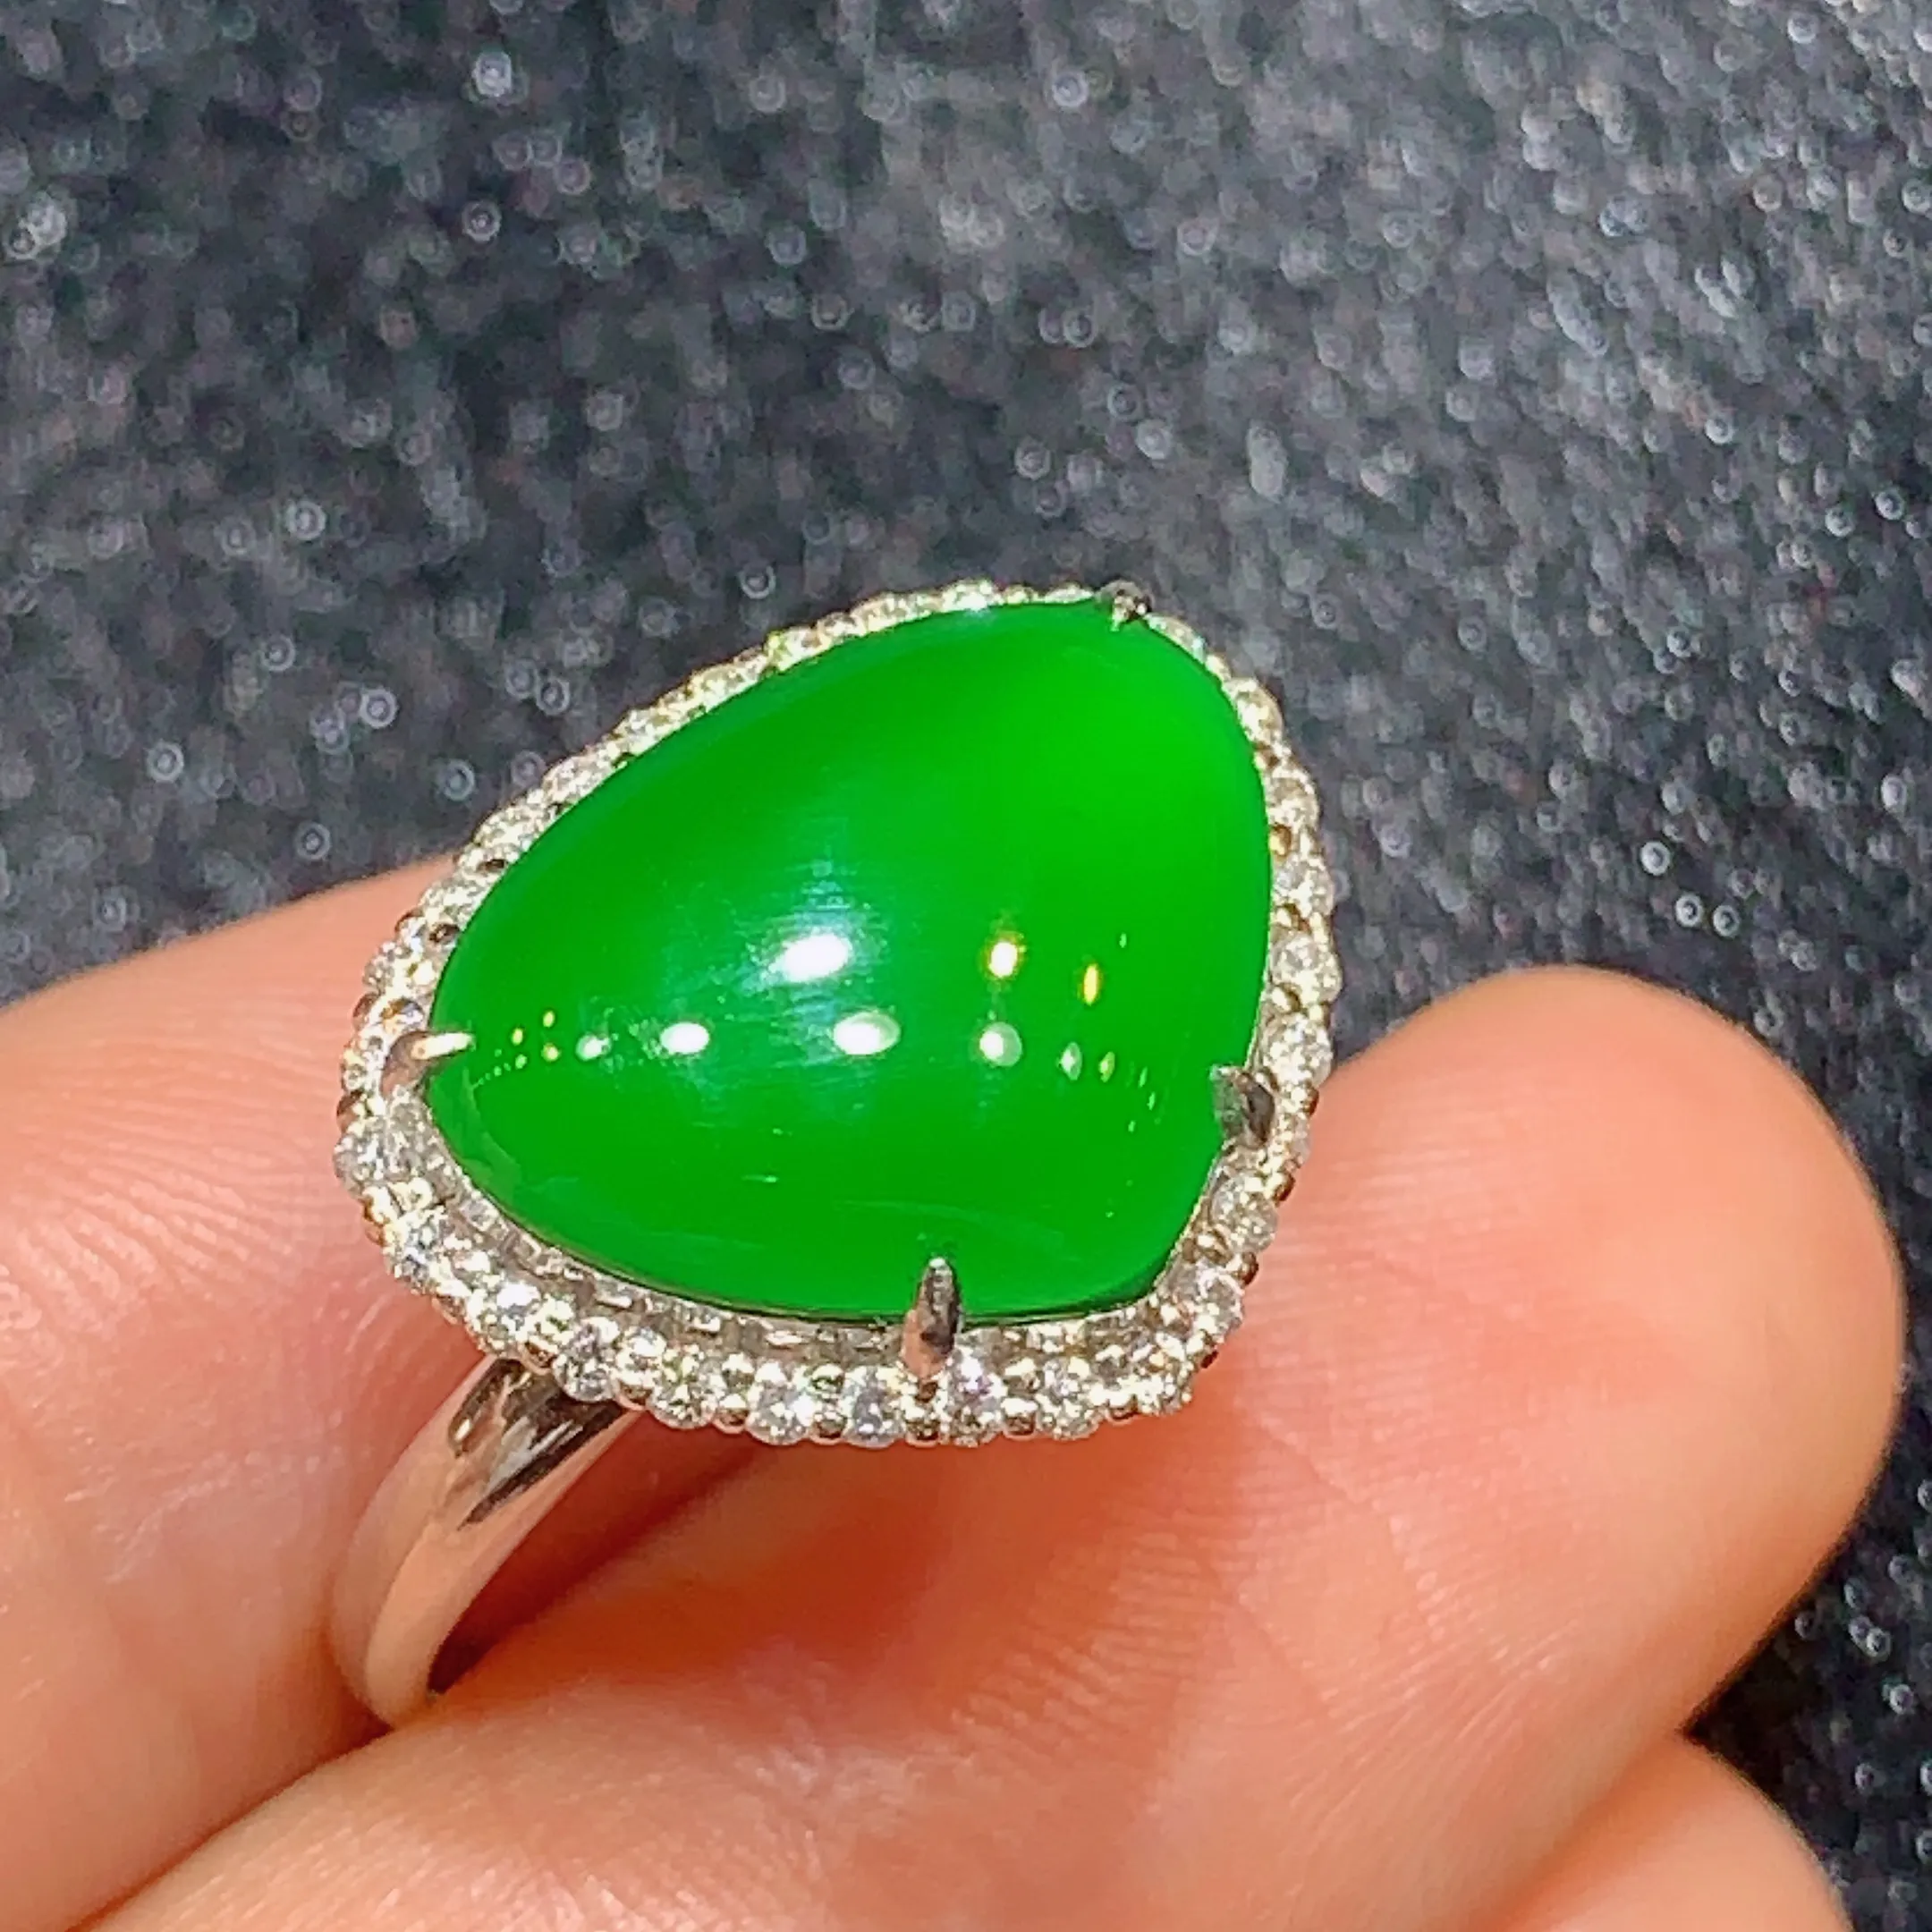 18k金钻镶嵌满绿心形戒指 玉质细腻 色泽艳丽 款式新颖时尚高贵大气 圈口13 整体尺寸14*17.